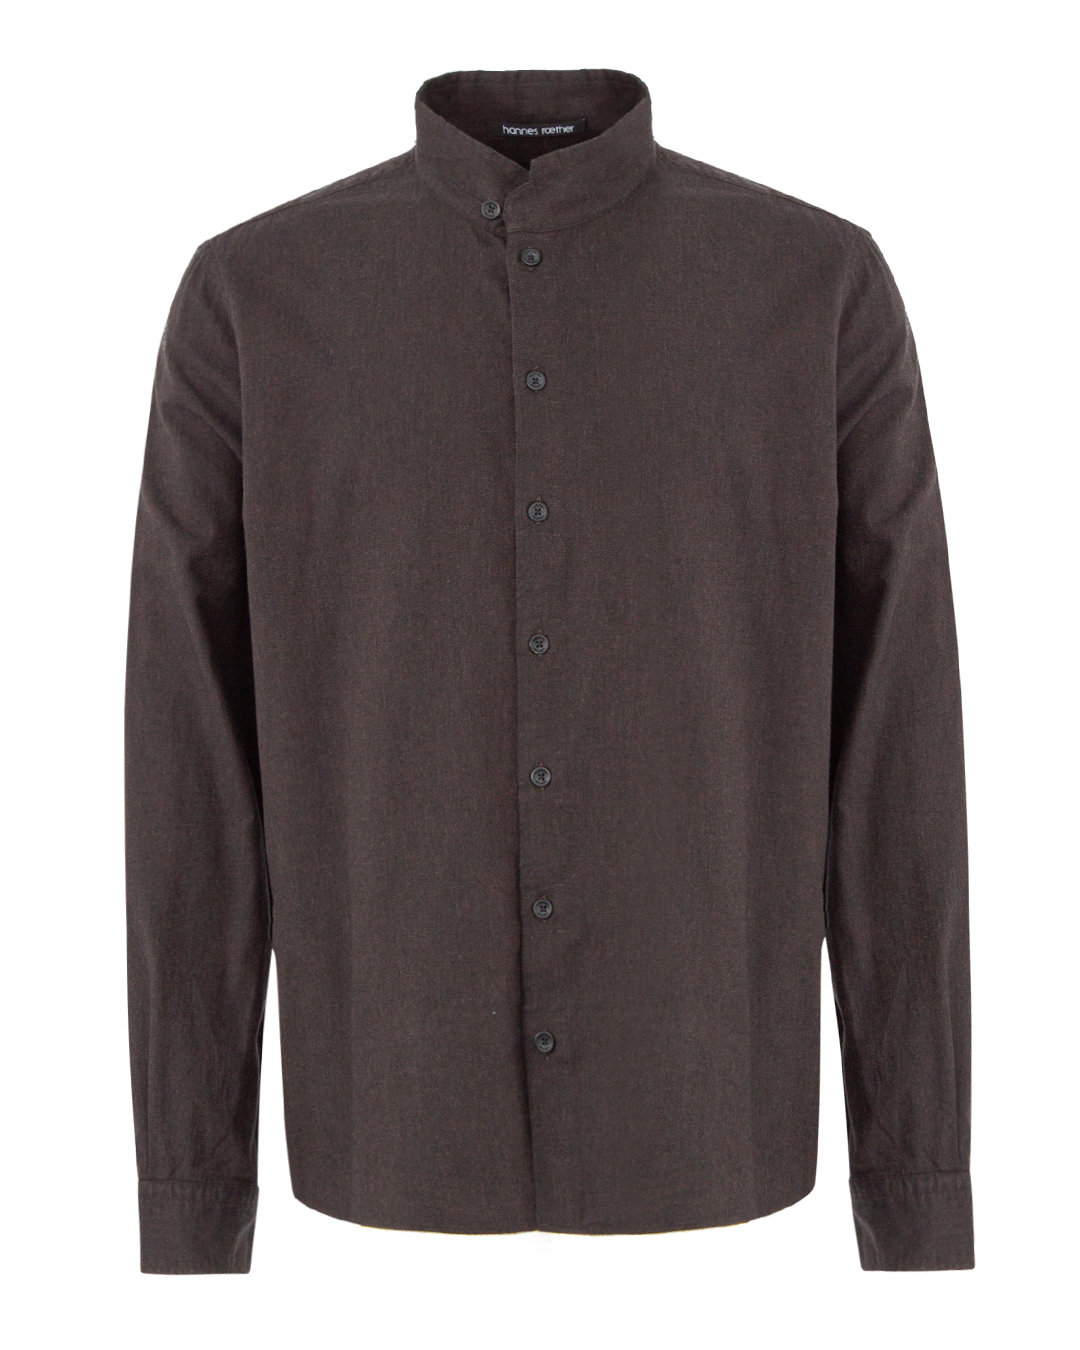 хлопковая рубашка Hannes Roether 110623/3028 тем.коричневый xl, размер xl